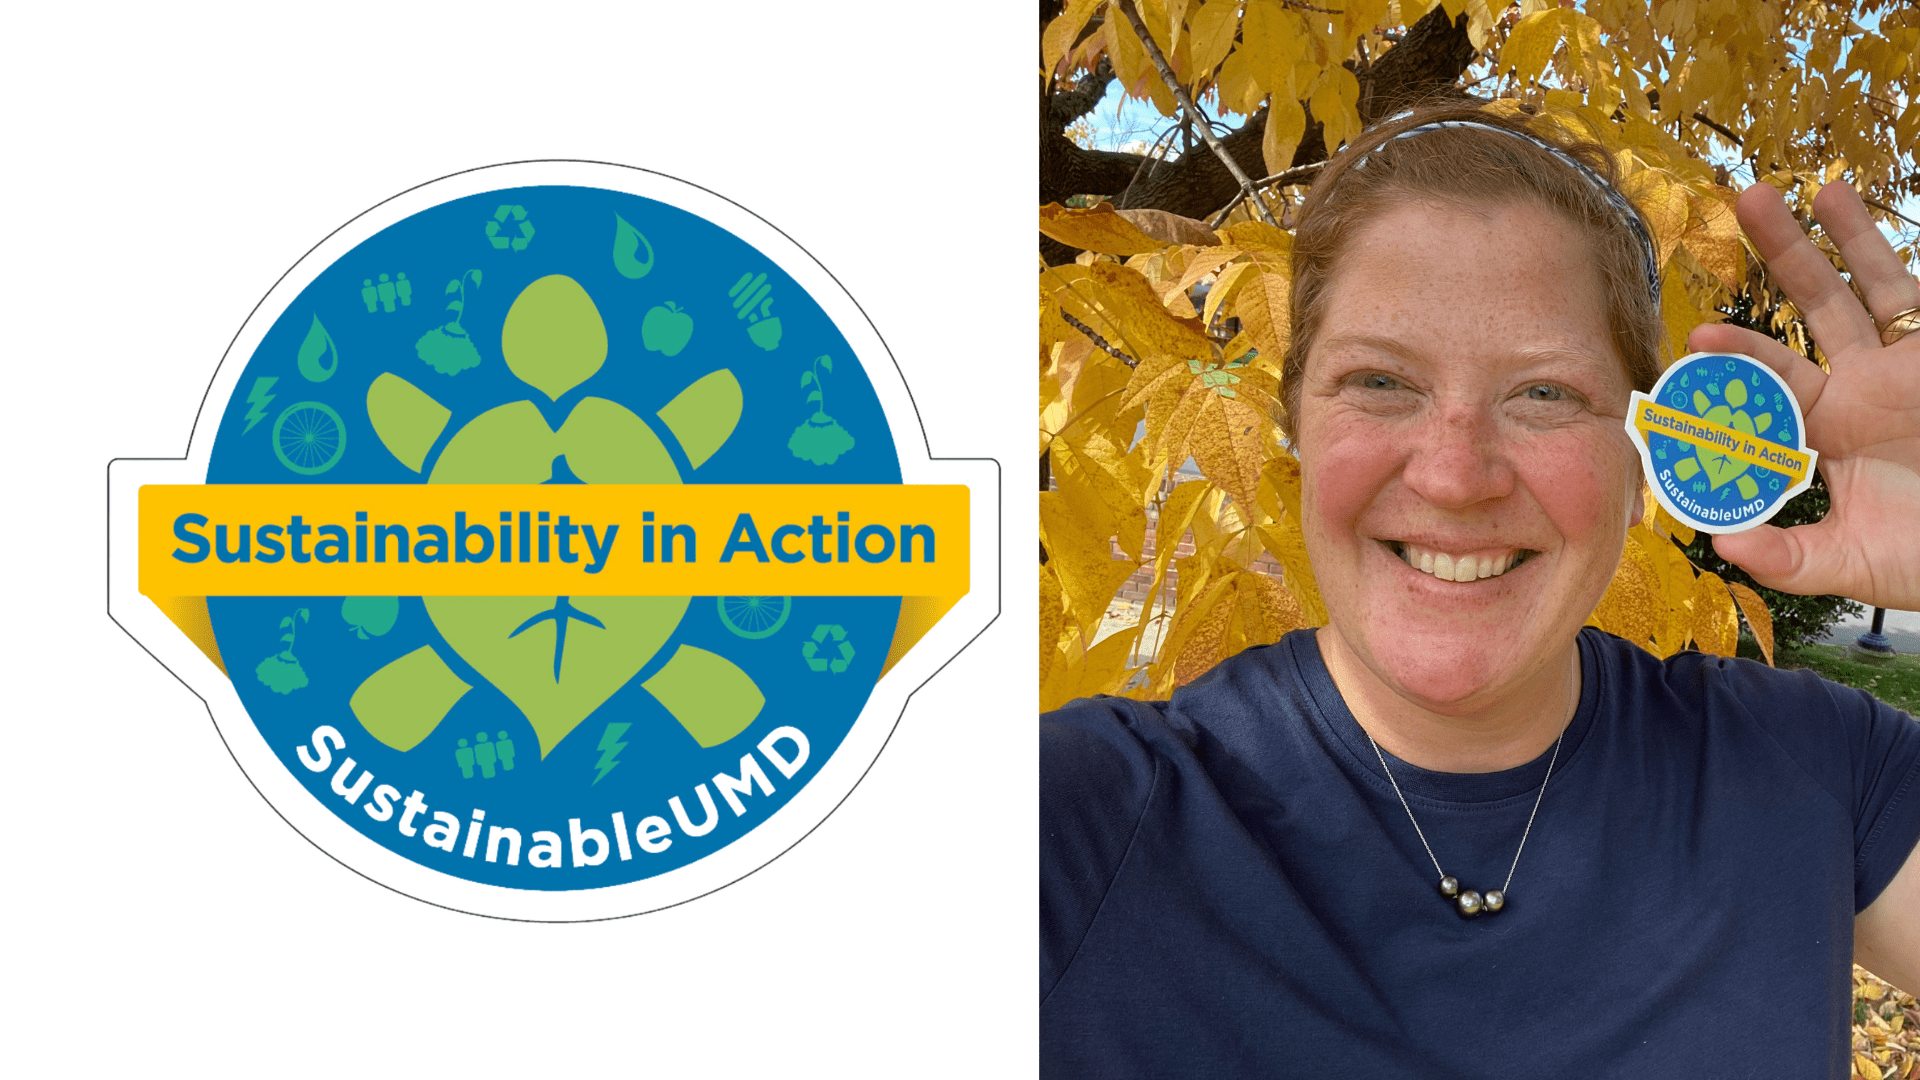 Sustainability Badge and Meg Smolinski with badge